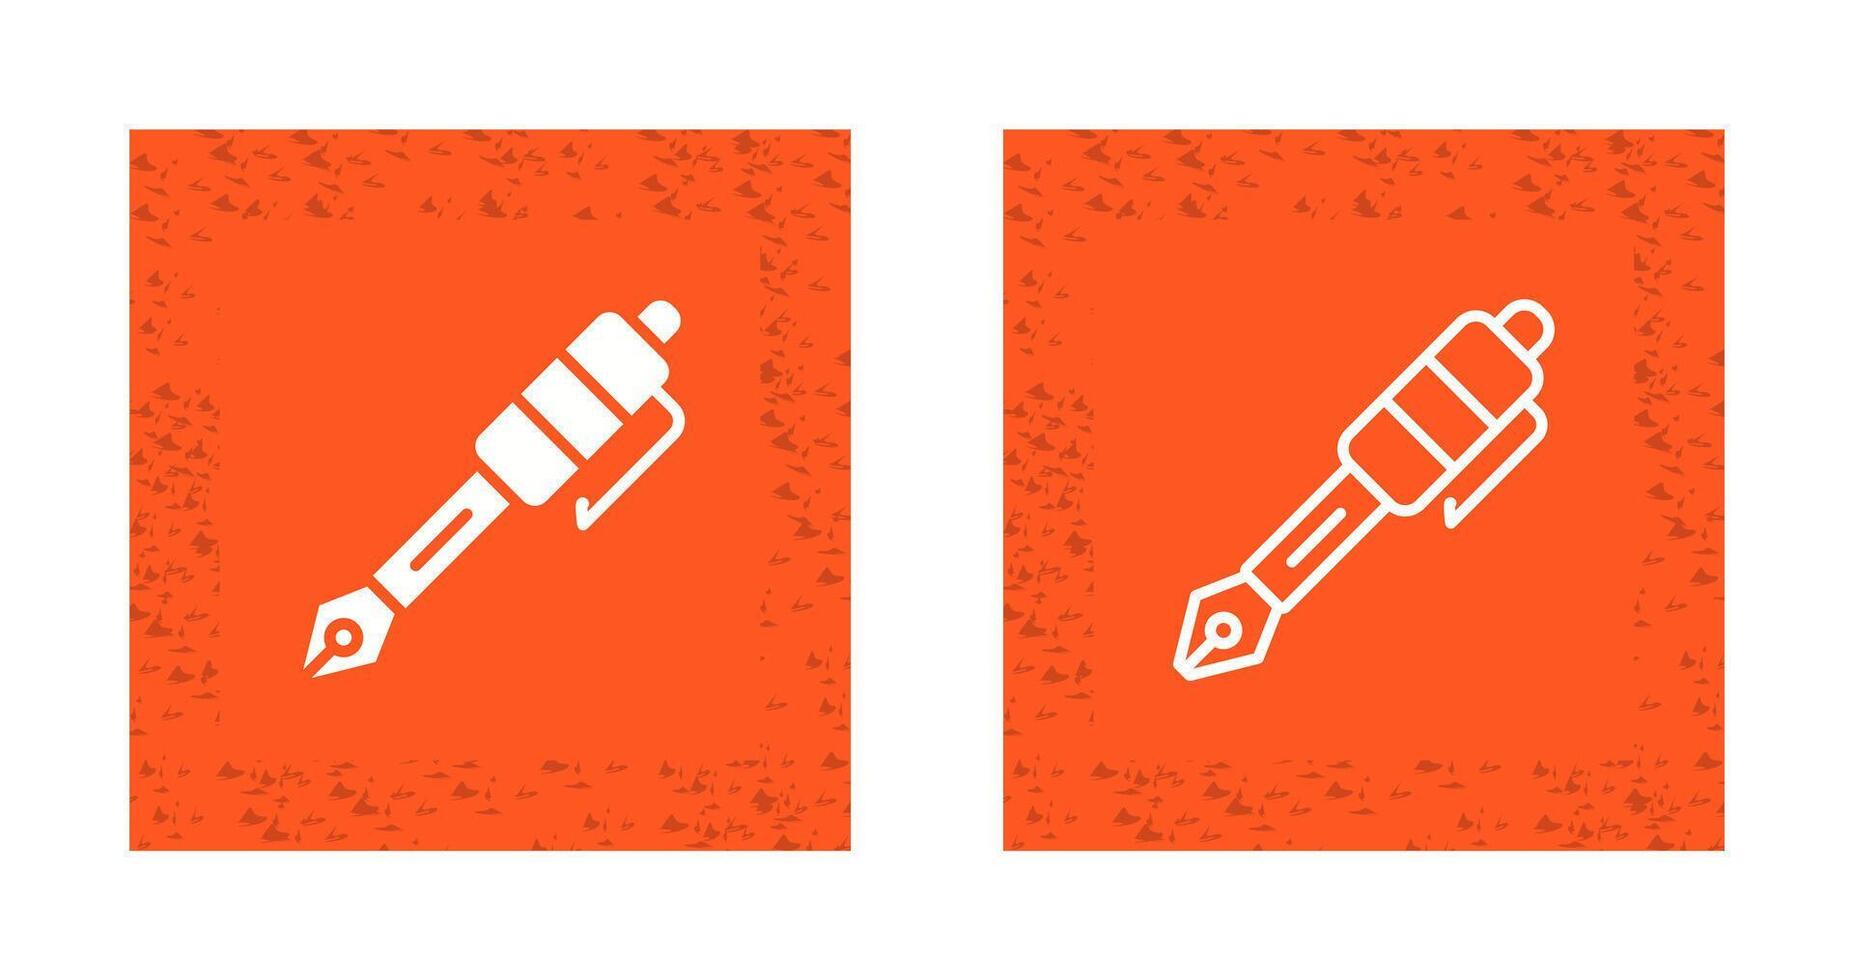 ícone de vetor de caneta-tinteiro